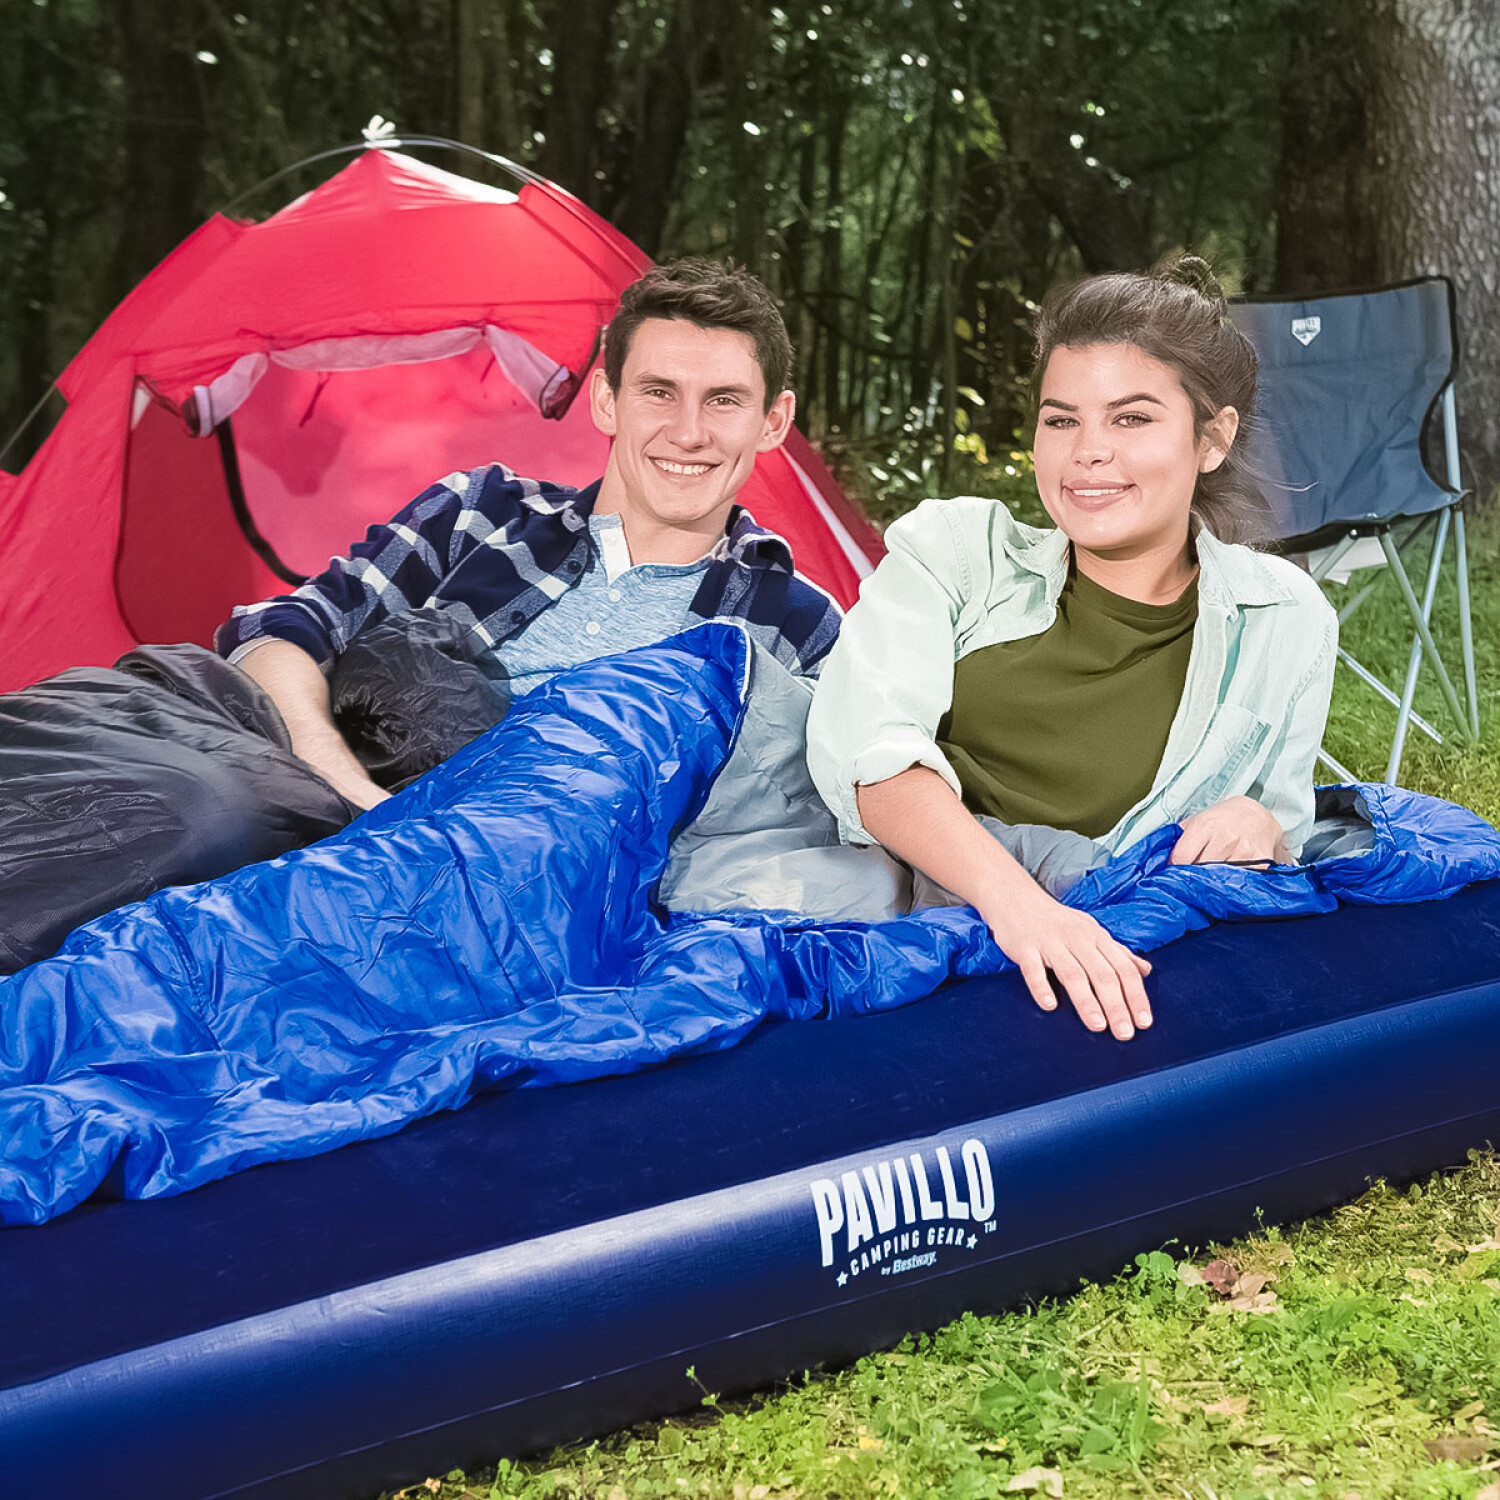 Almohadas y Accesorios para Dormir en Camping